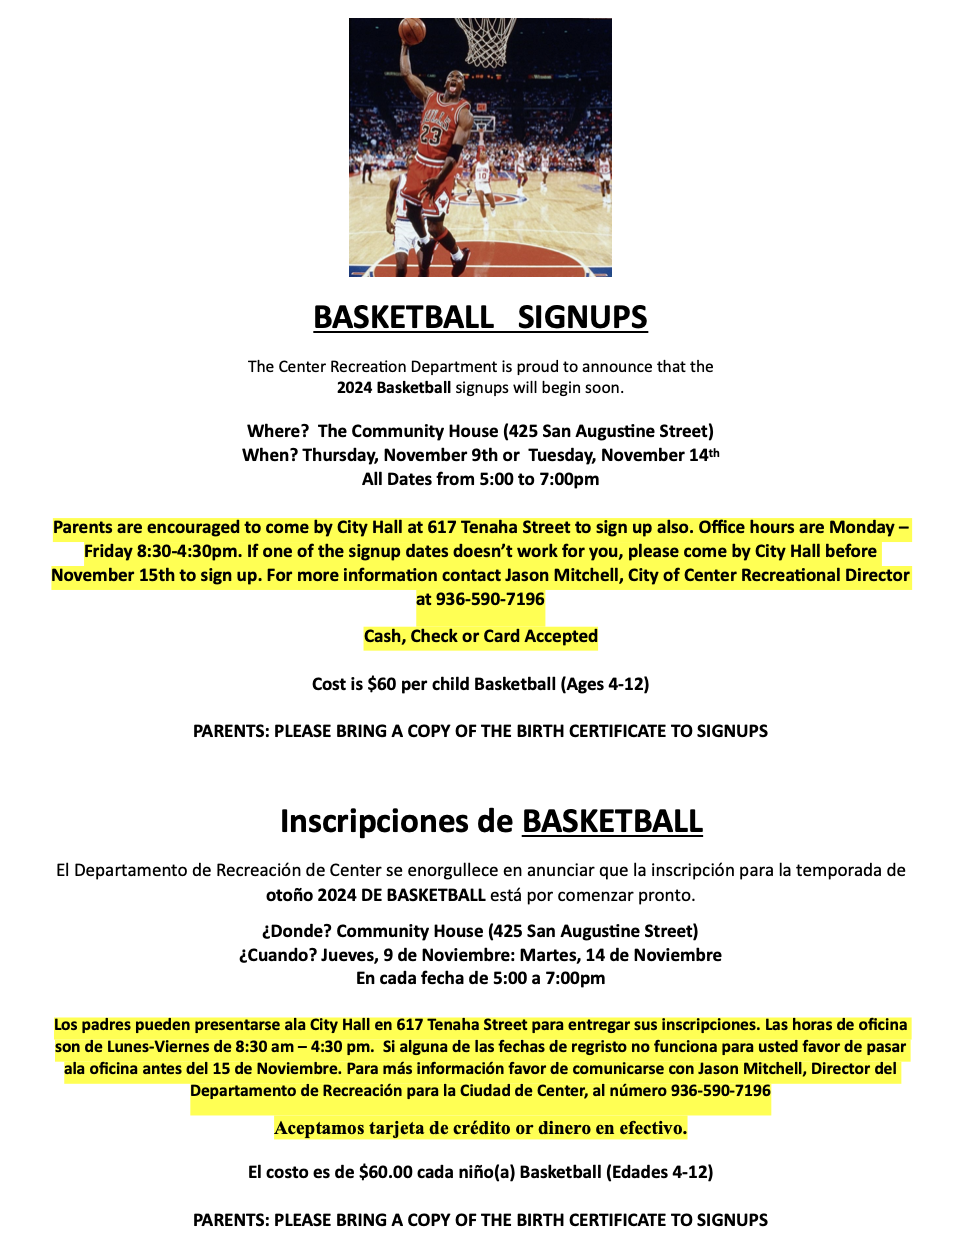 Center Recreation Department 2024 Basketball Sign-ups